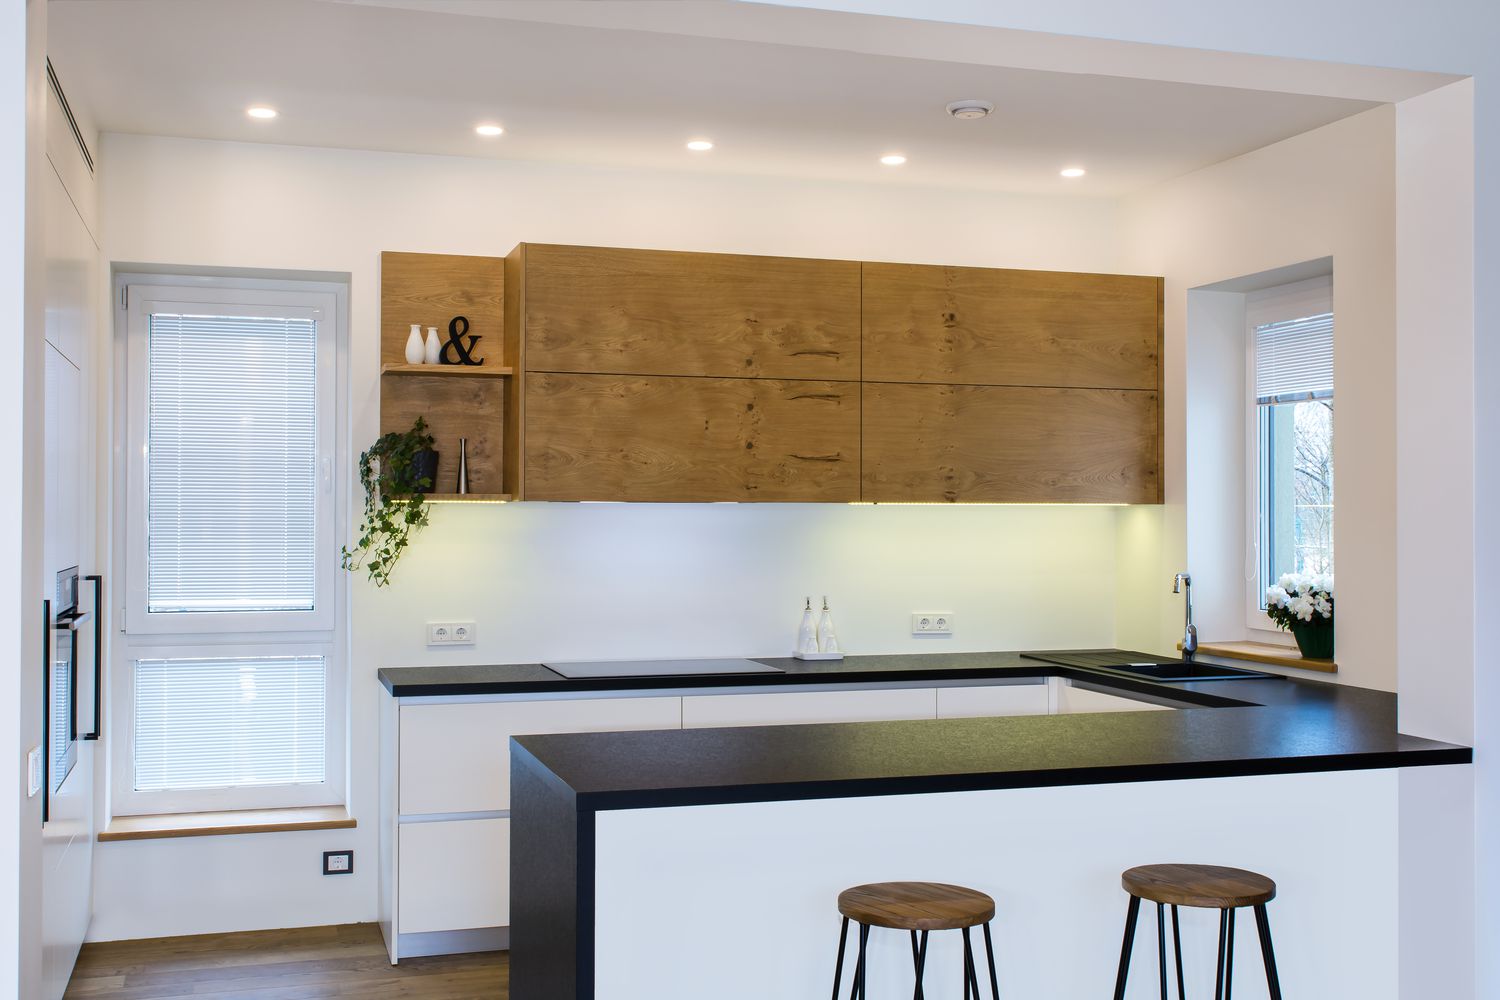 Diseño de cocina moderna en interior claro con detalles de madera.